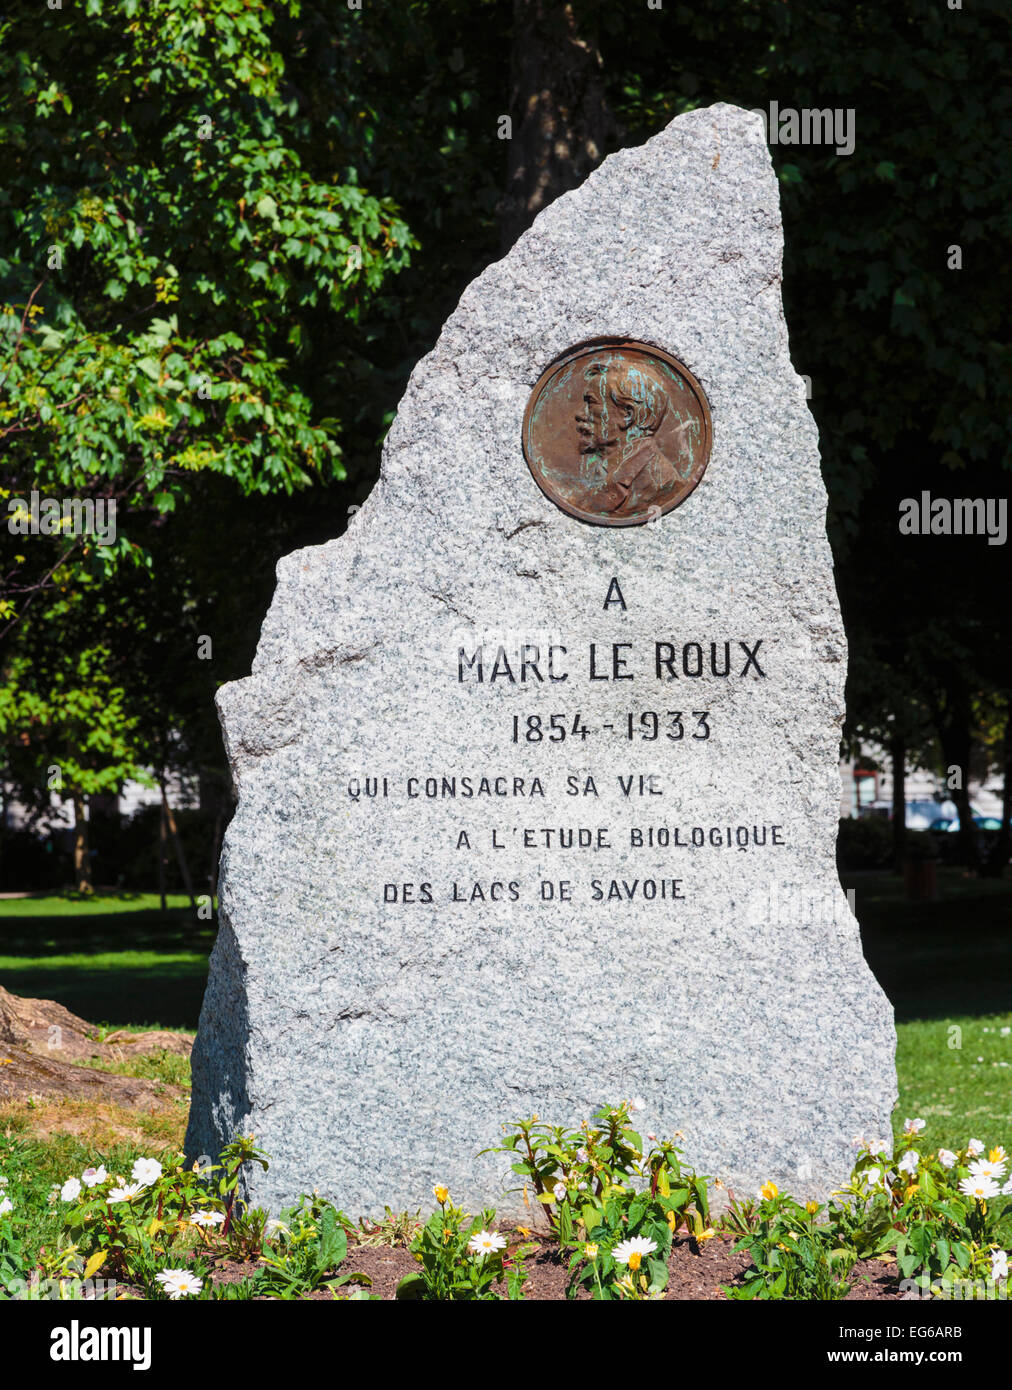 Annecy, Haute-Savoie Abteilung, Rhone-Alpes, Frankreich.  Denkmal für Marc le Roux, 1854-1933, Biologe. Stockfoto